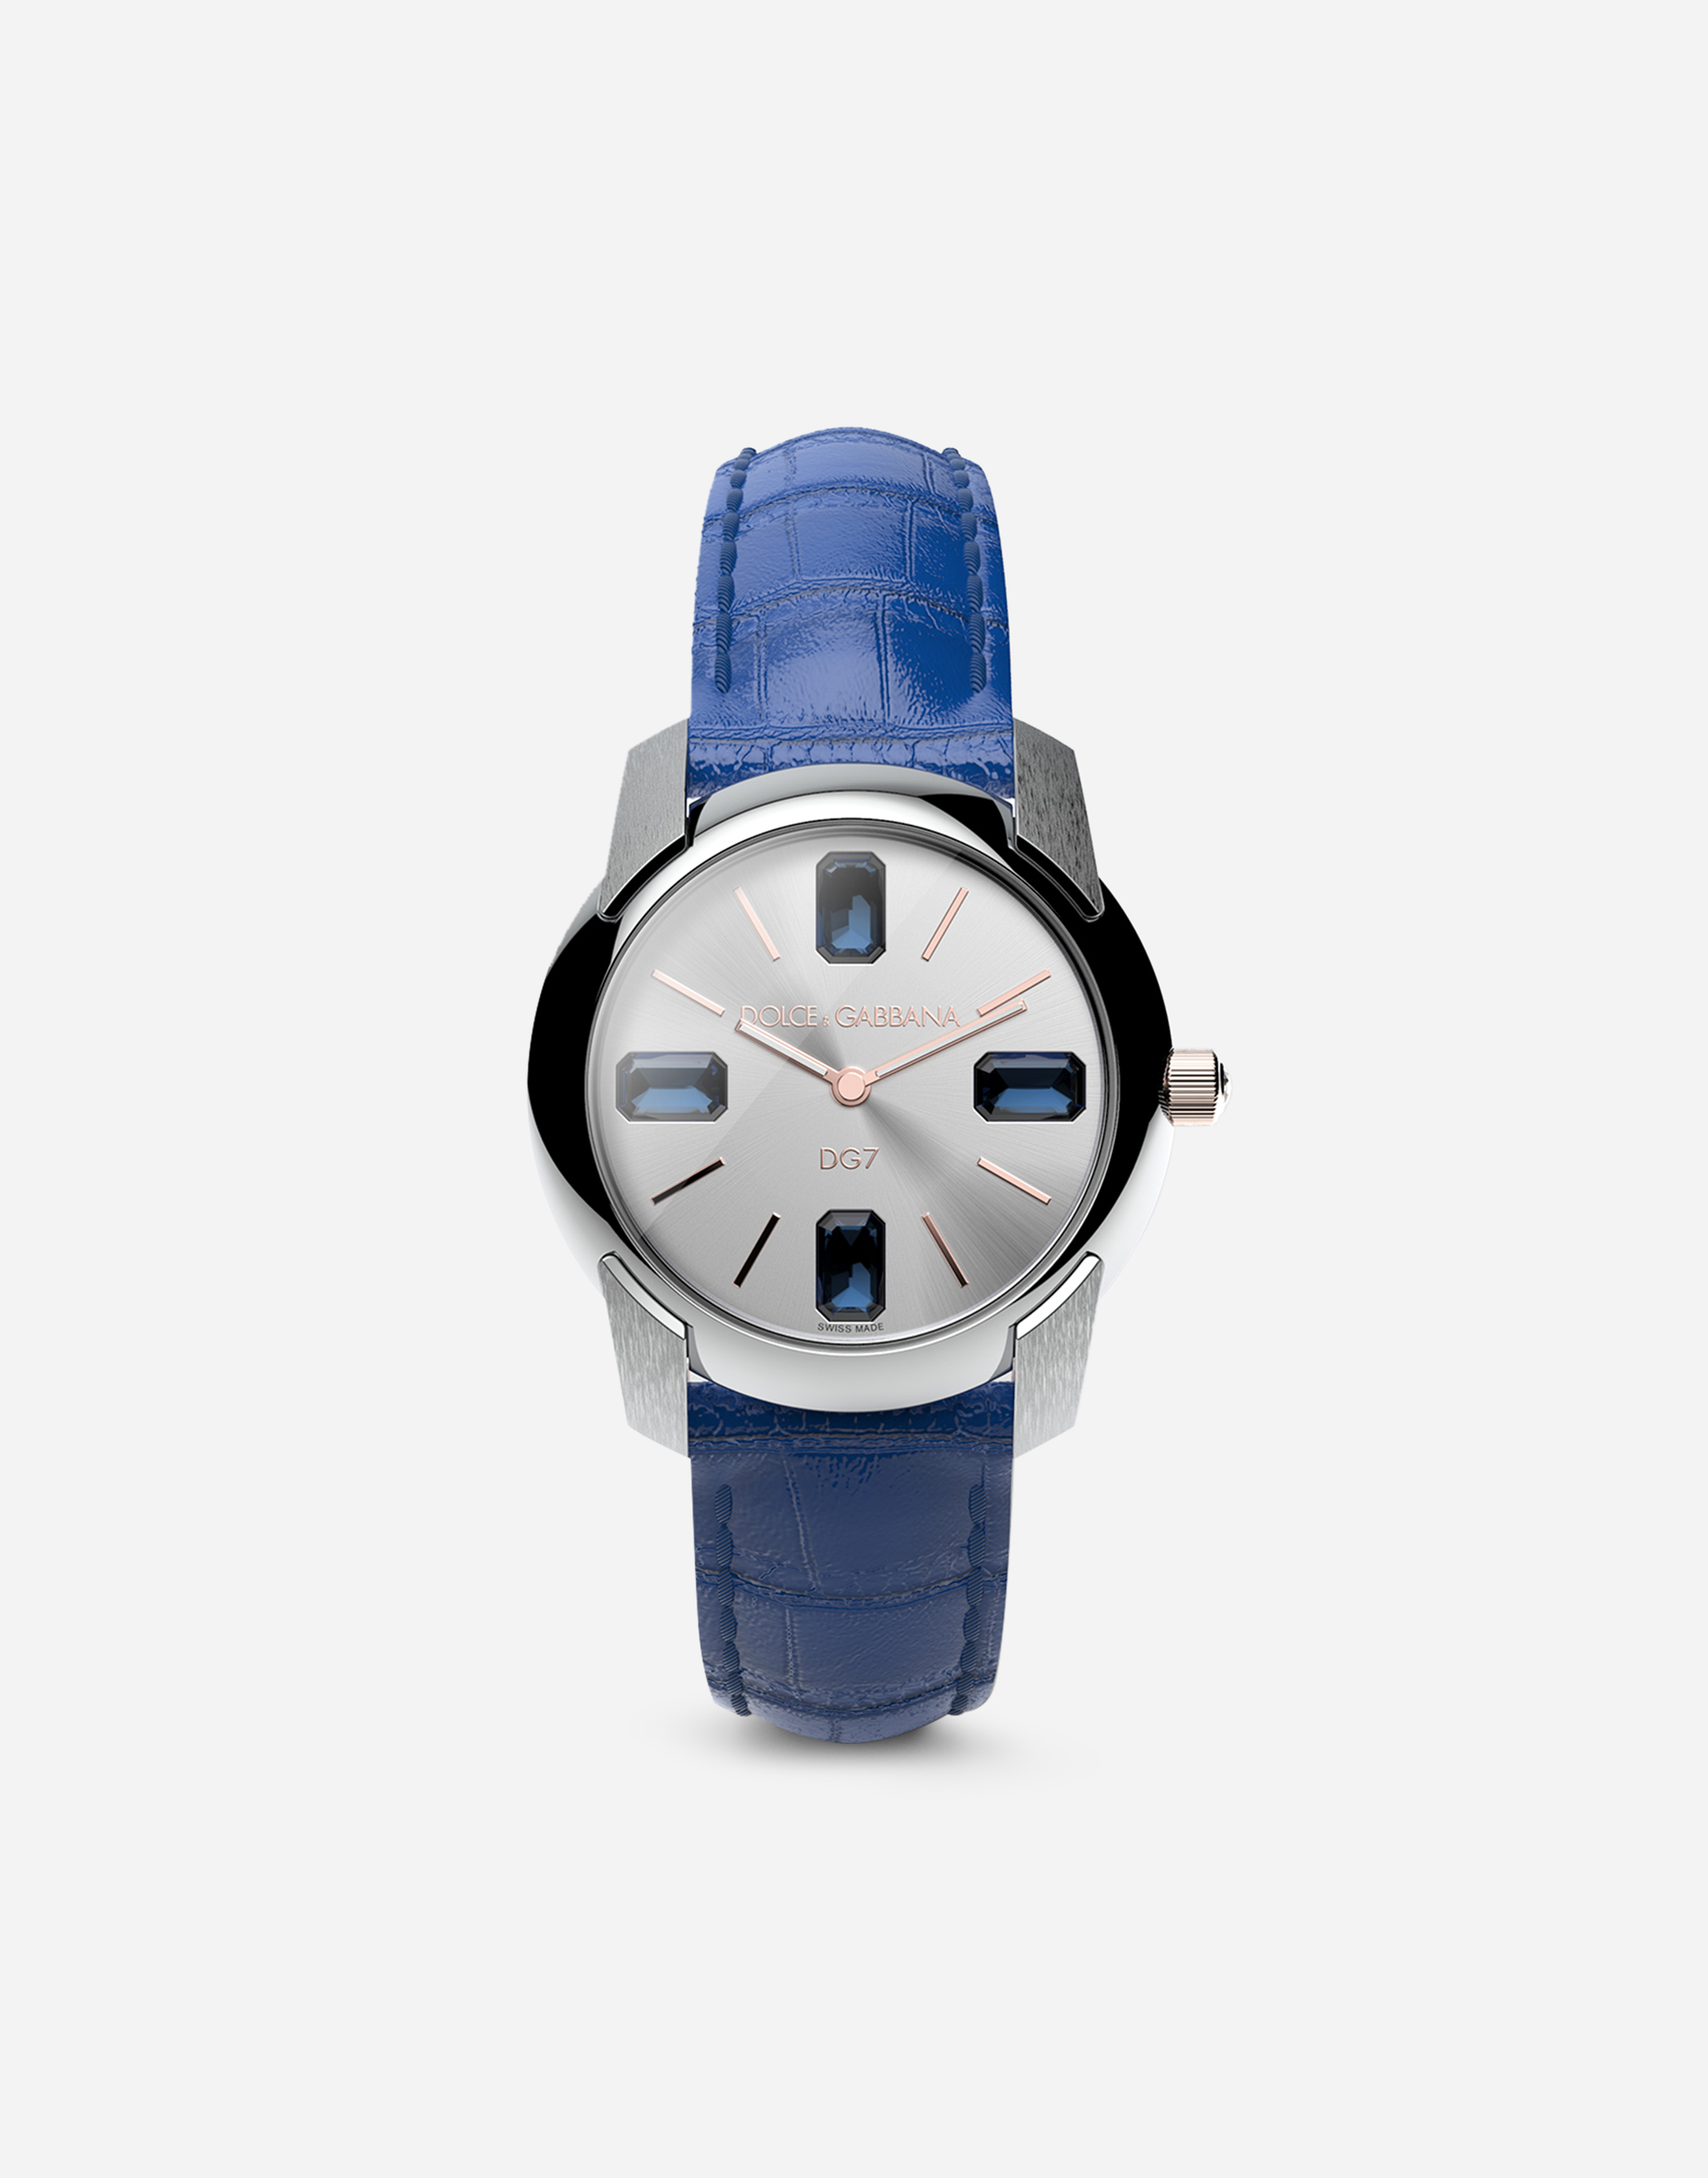 Dolce & Gabbana Watch With Alligator Strap In Navy Blue